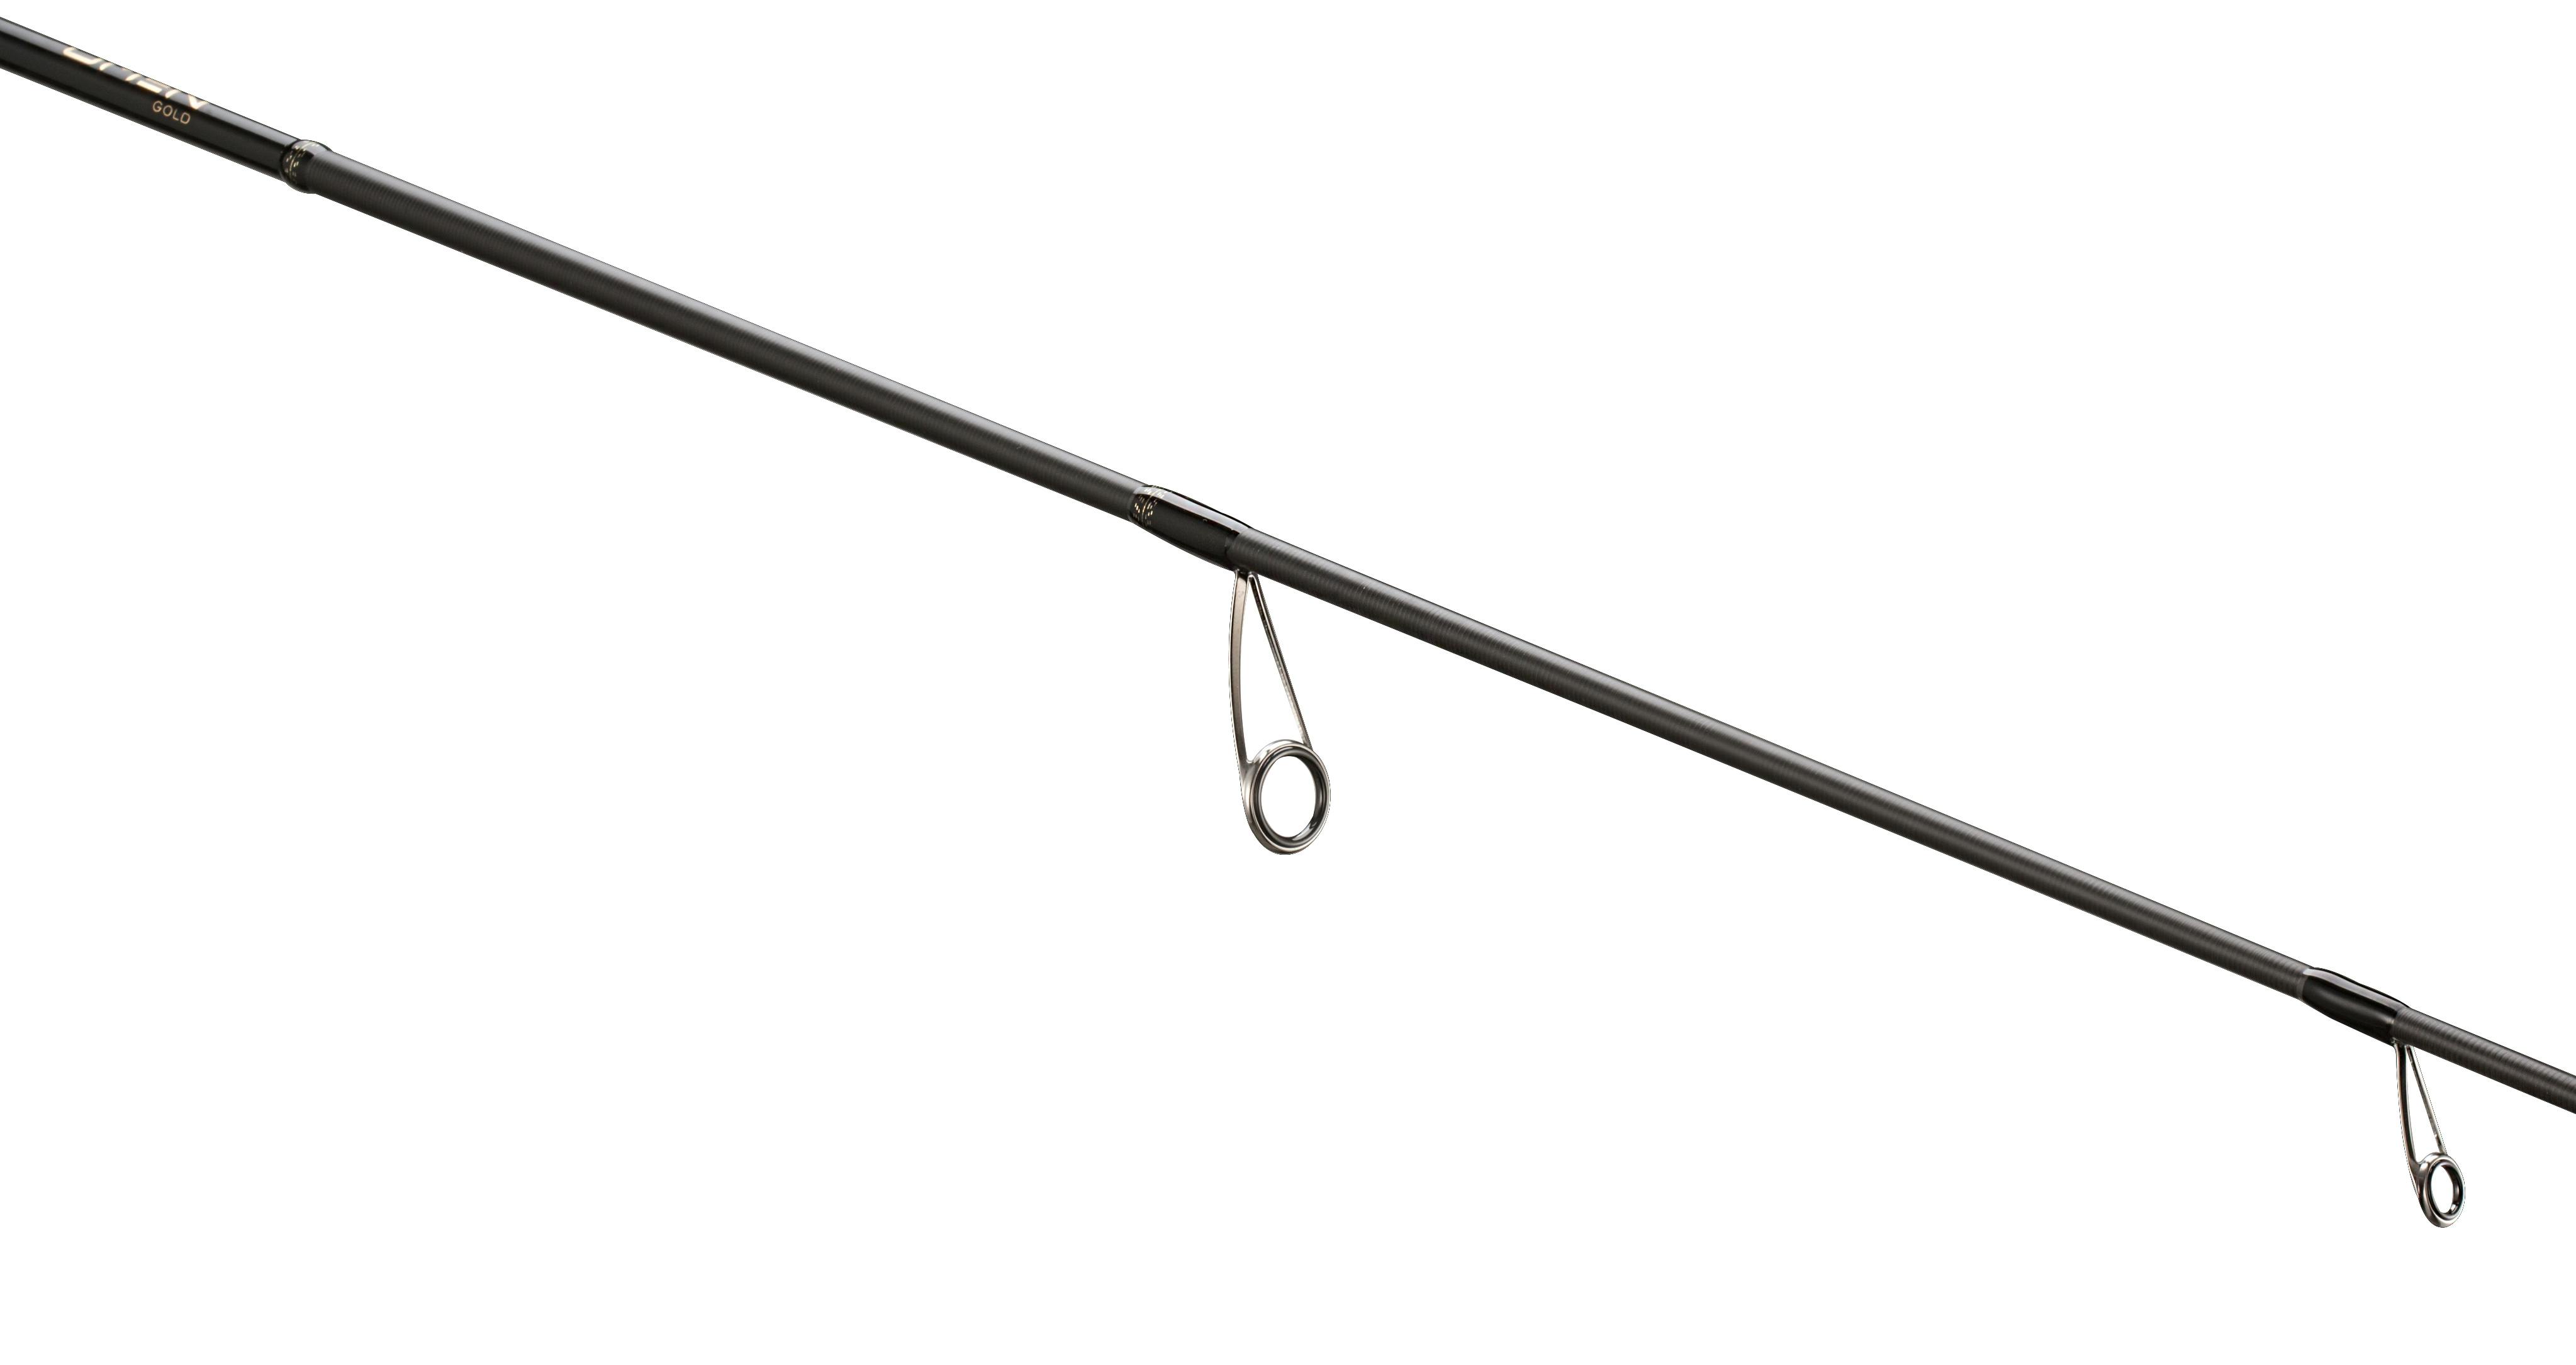 13 Fishing Omen Gold Spinning Rod · 6'9" · Medium